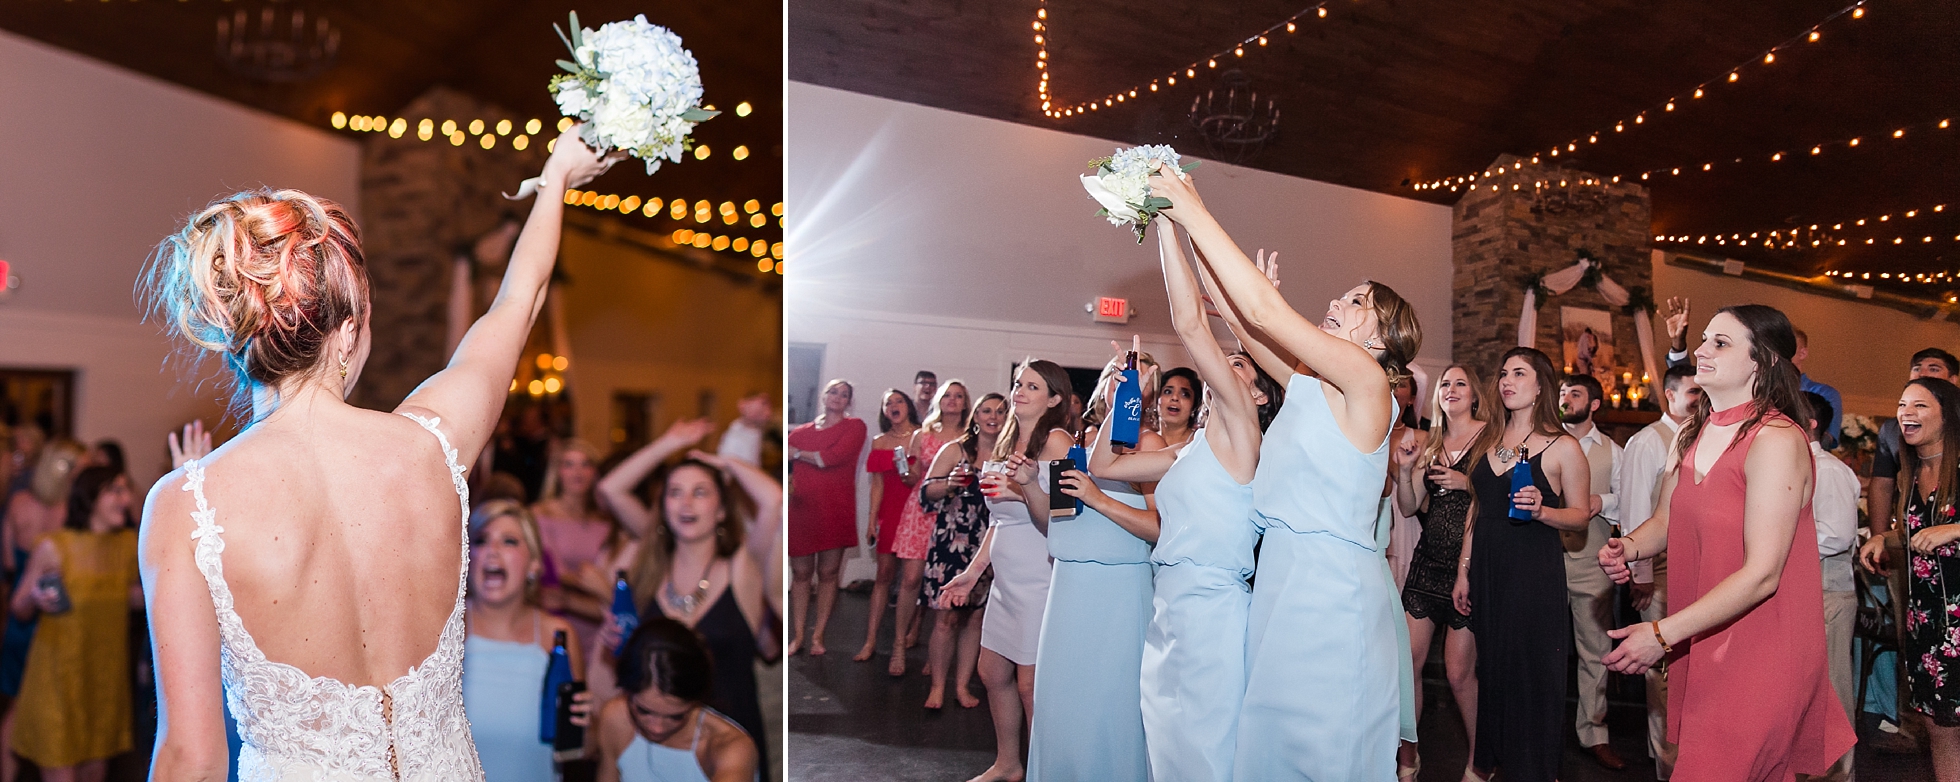 bouquet toss wedding